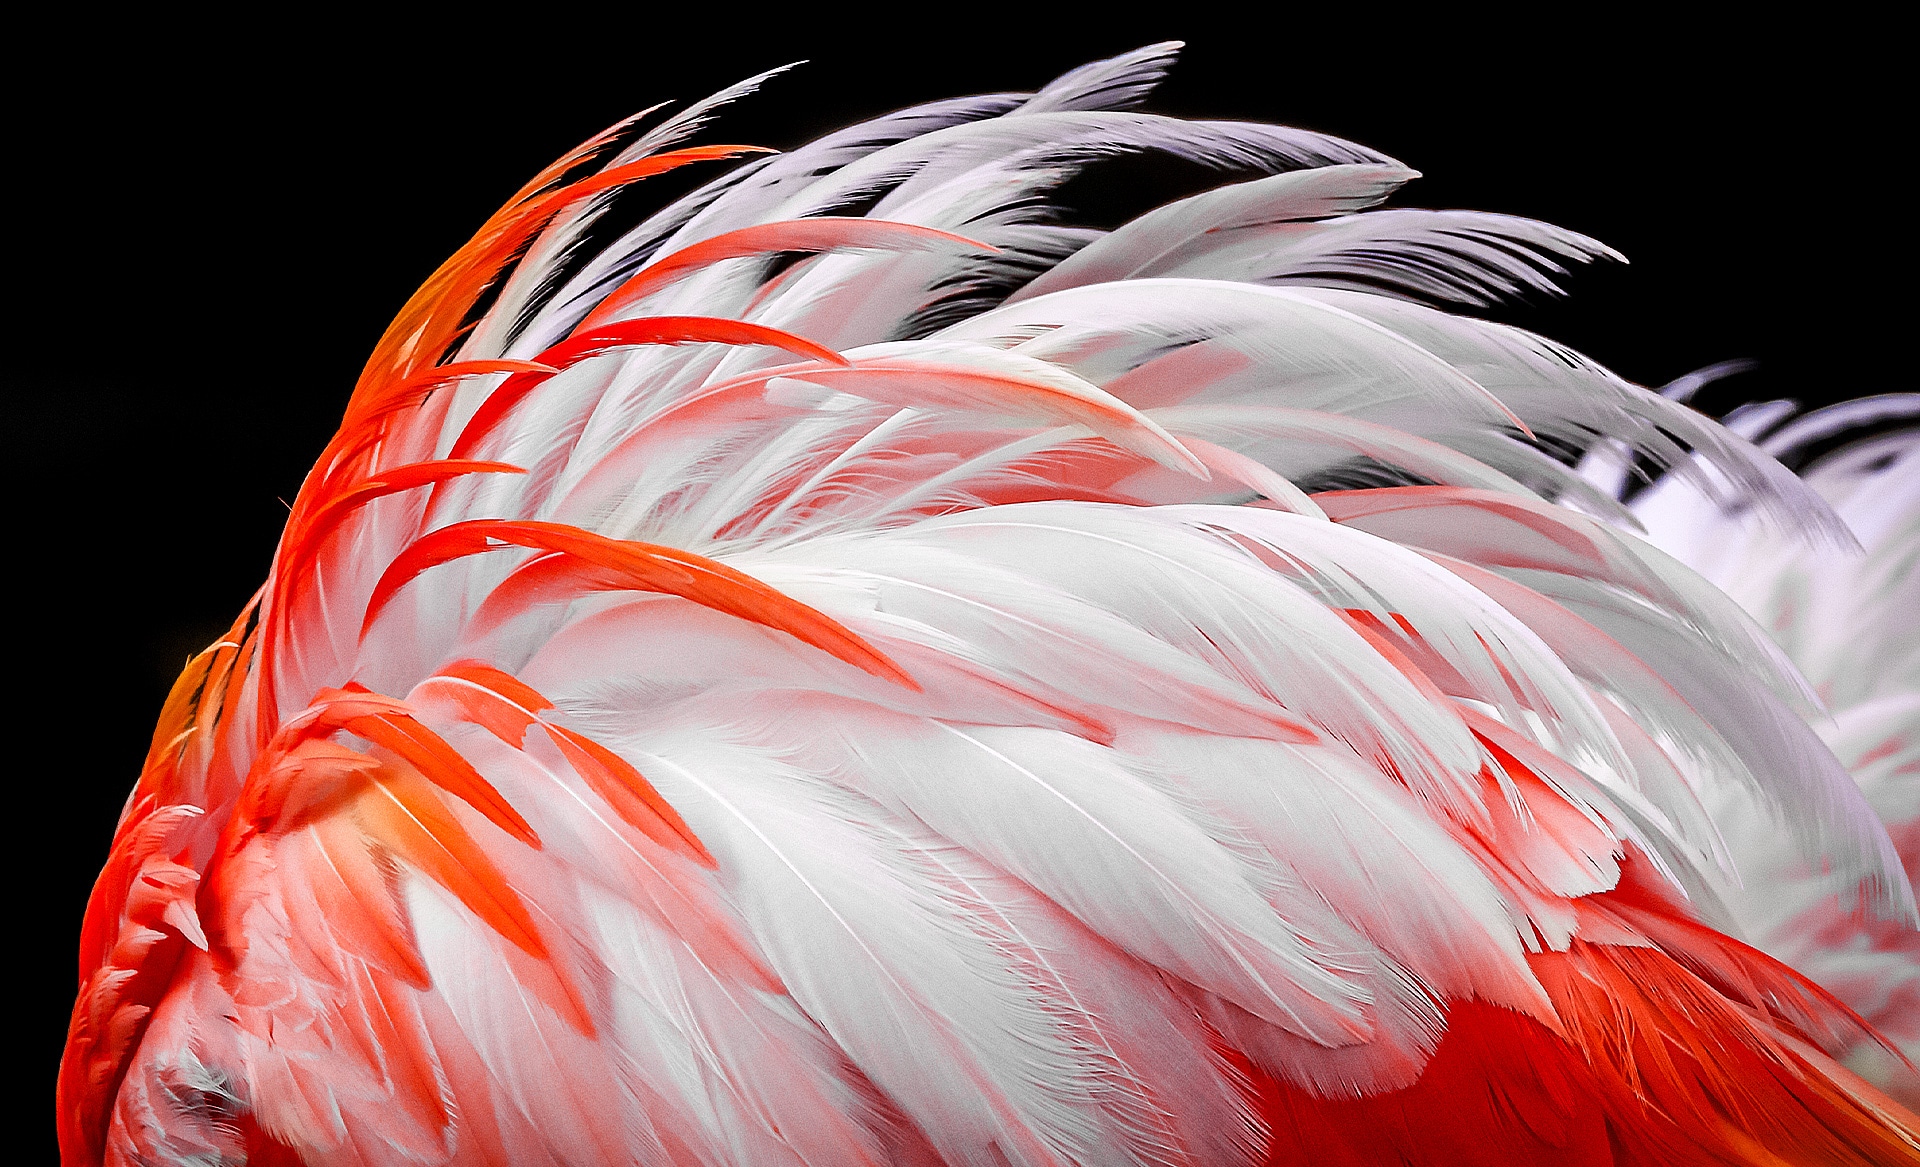 En kontrastlös bild av vita och orange flamingofjädrar visas på skärmen. De syns gradvis förbättras med 8%, 13%, 20%, 23%, 26% och slutligen 30%.